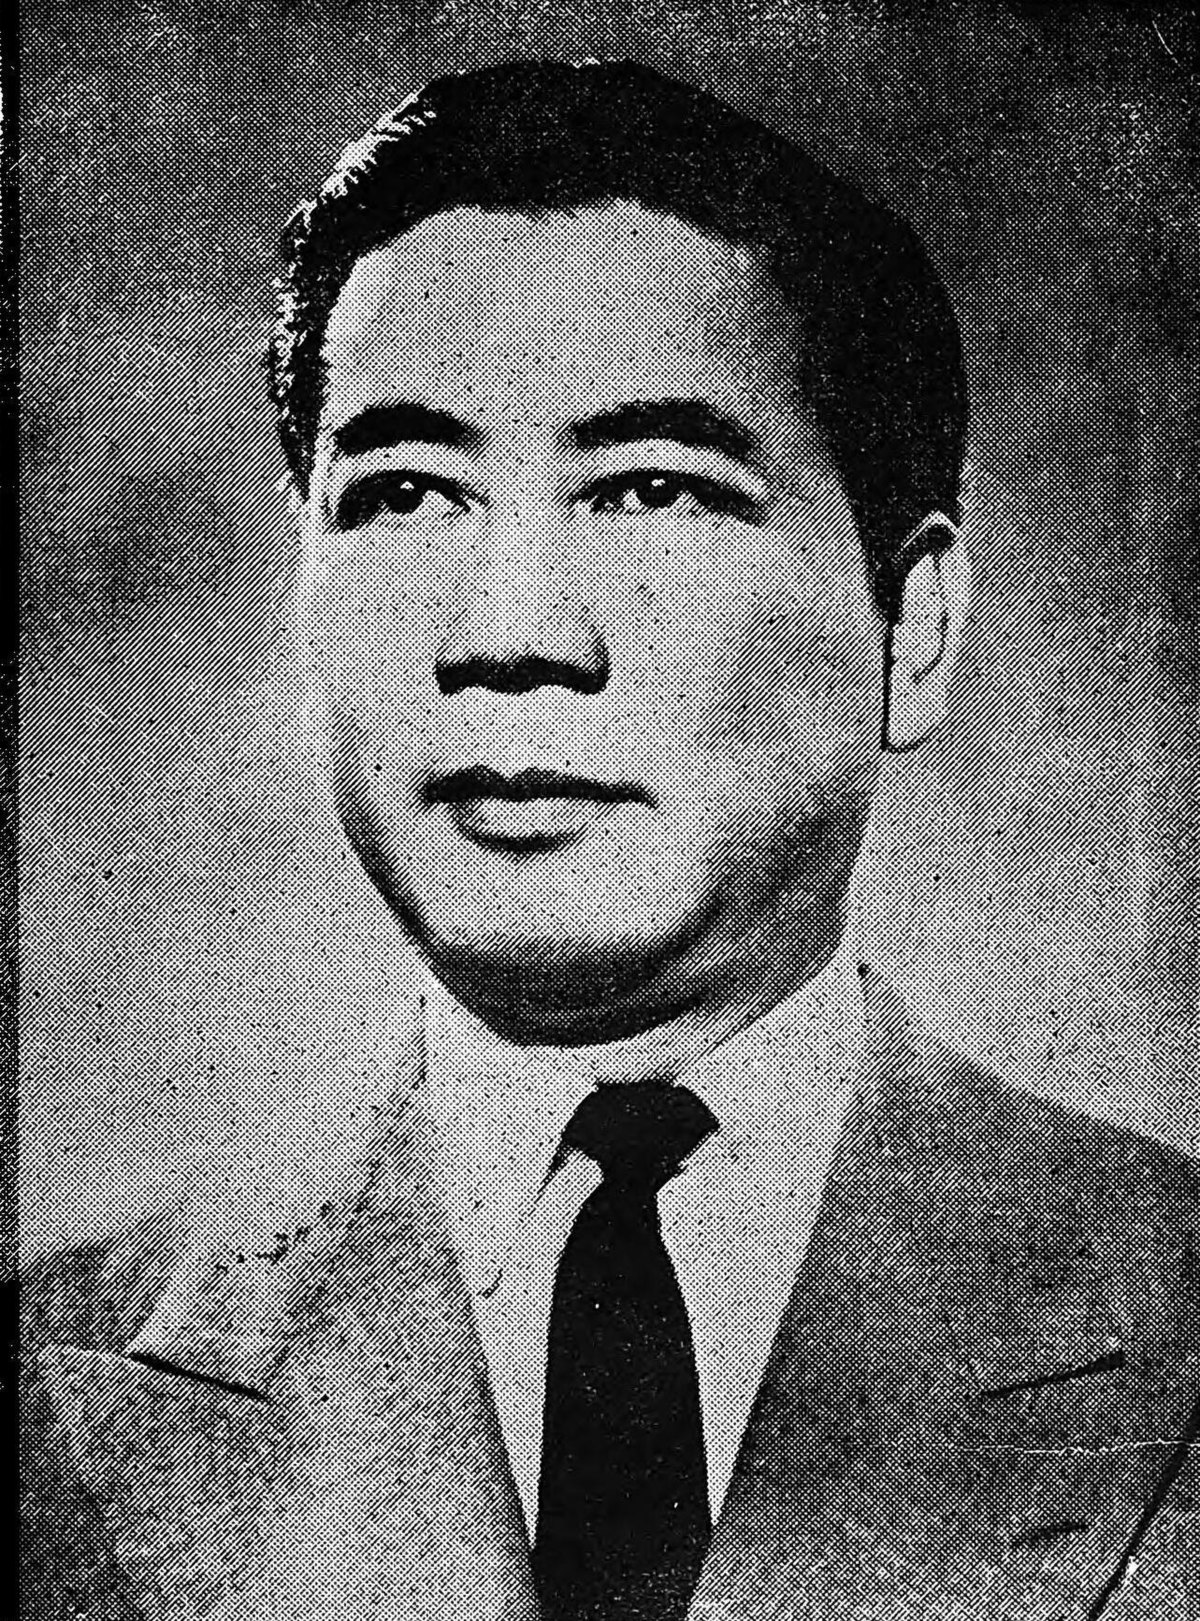 Với hình ảnh về Ngô Đình Diệm trên Wikipedia tiếng Việt, bạn sẽ có được cái nhìn khách quan, cụ thể về cuộc đời của người đàn ông này. Những thước hình này sẽ đem lại cho bạn cái nhìn chân thật và xác thực về lịch sử Việt Nam.